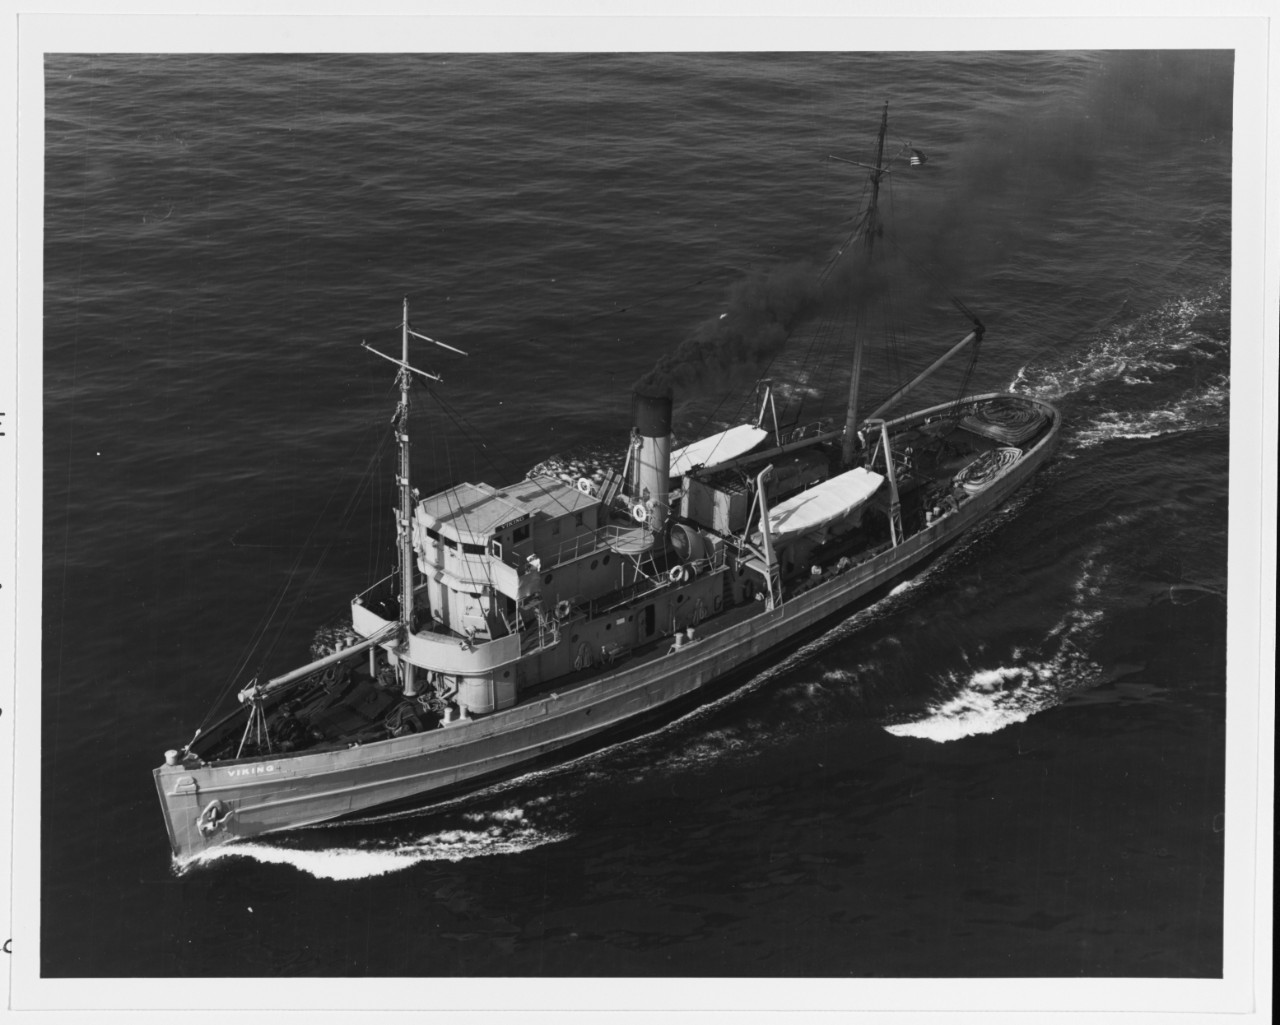 Salvage Ship VIKING of Merritt, Chapman & Scott Co.